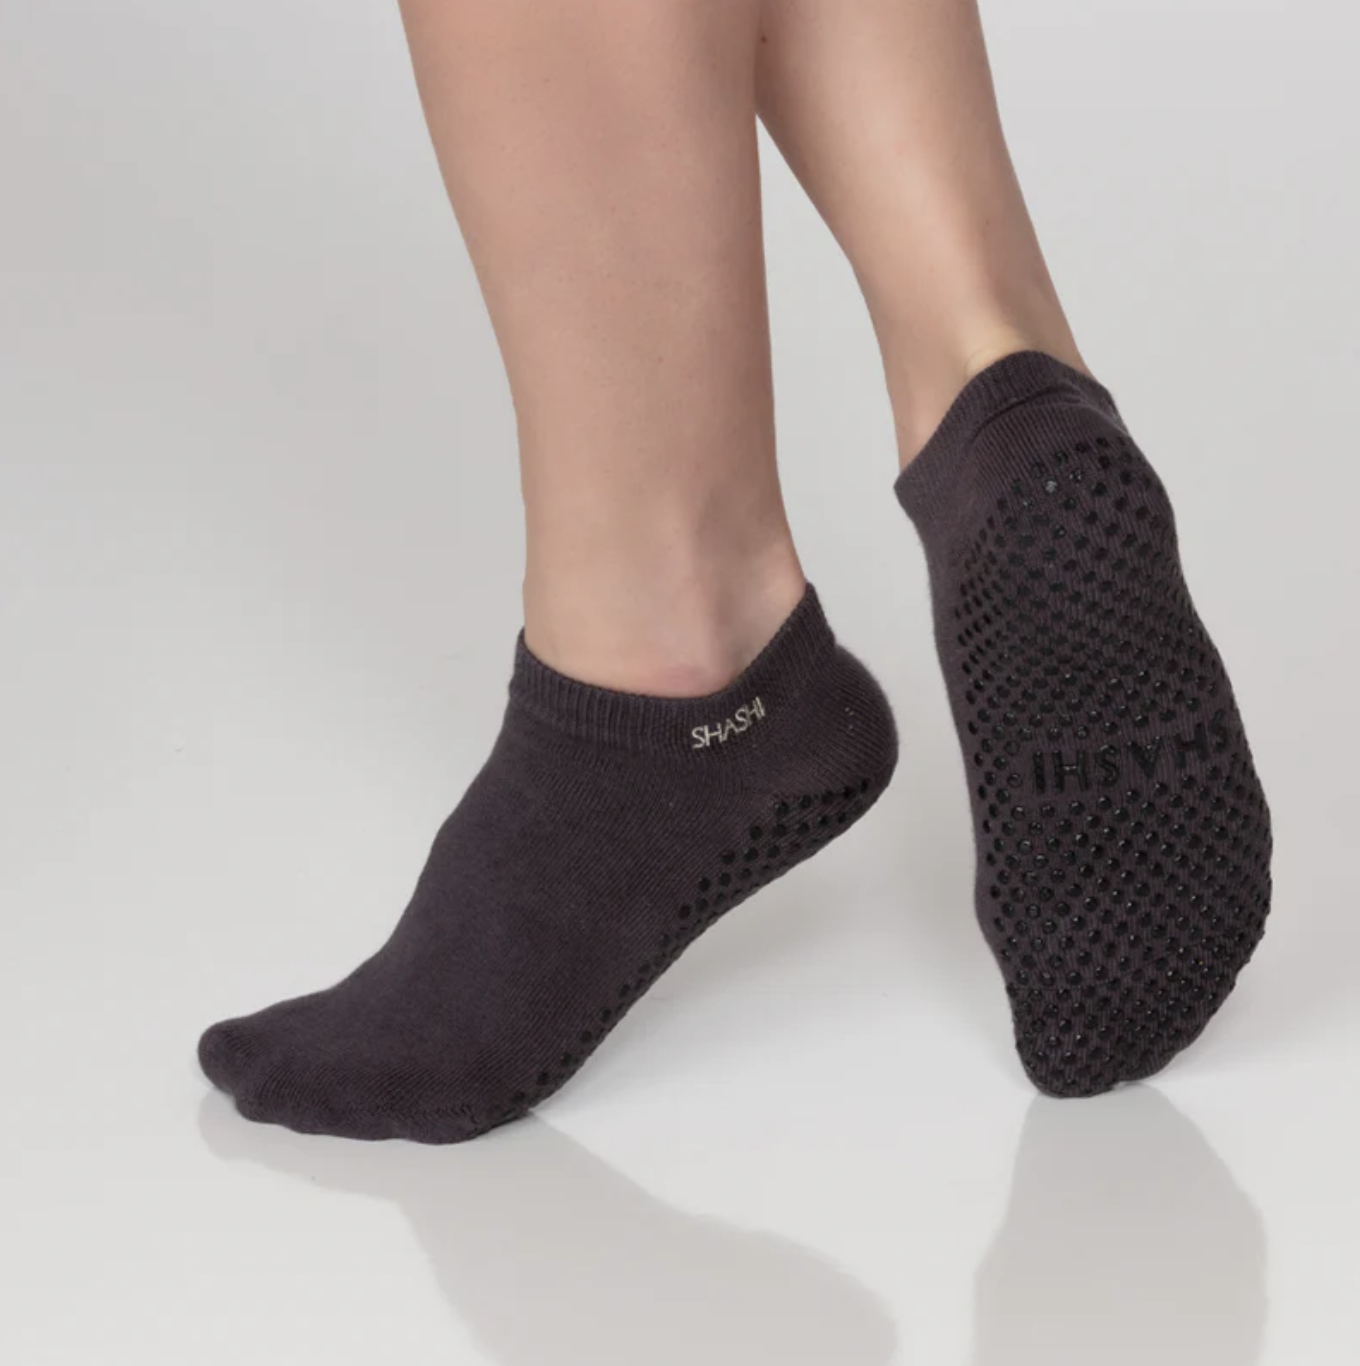 SHASHI Socks - Basic Full Foot (Nine Iron Grey)